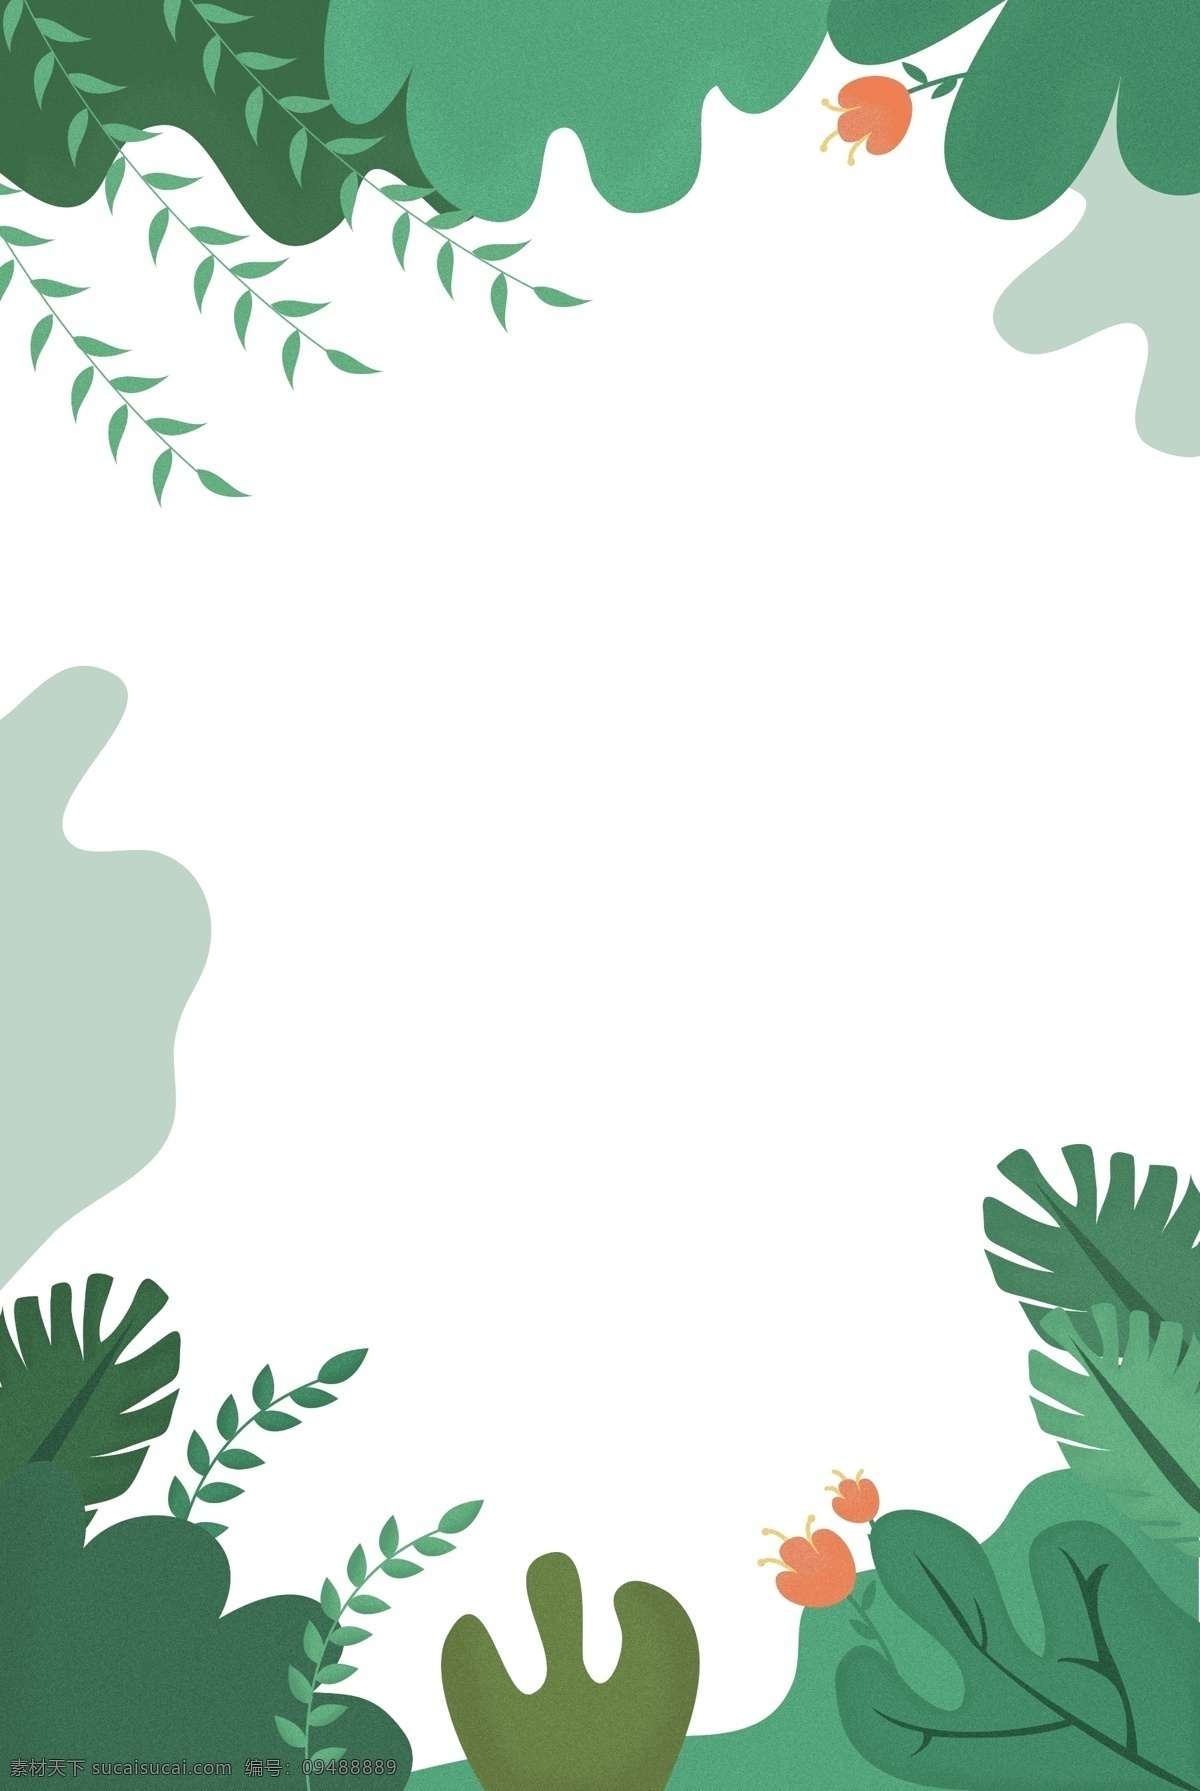 盛夏 绿植 简约 背景 图 夏日 植物 背景图 文艺 水彩 手绘 纹理 海报